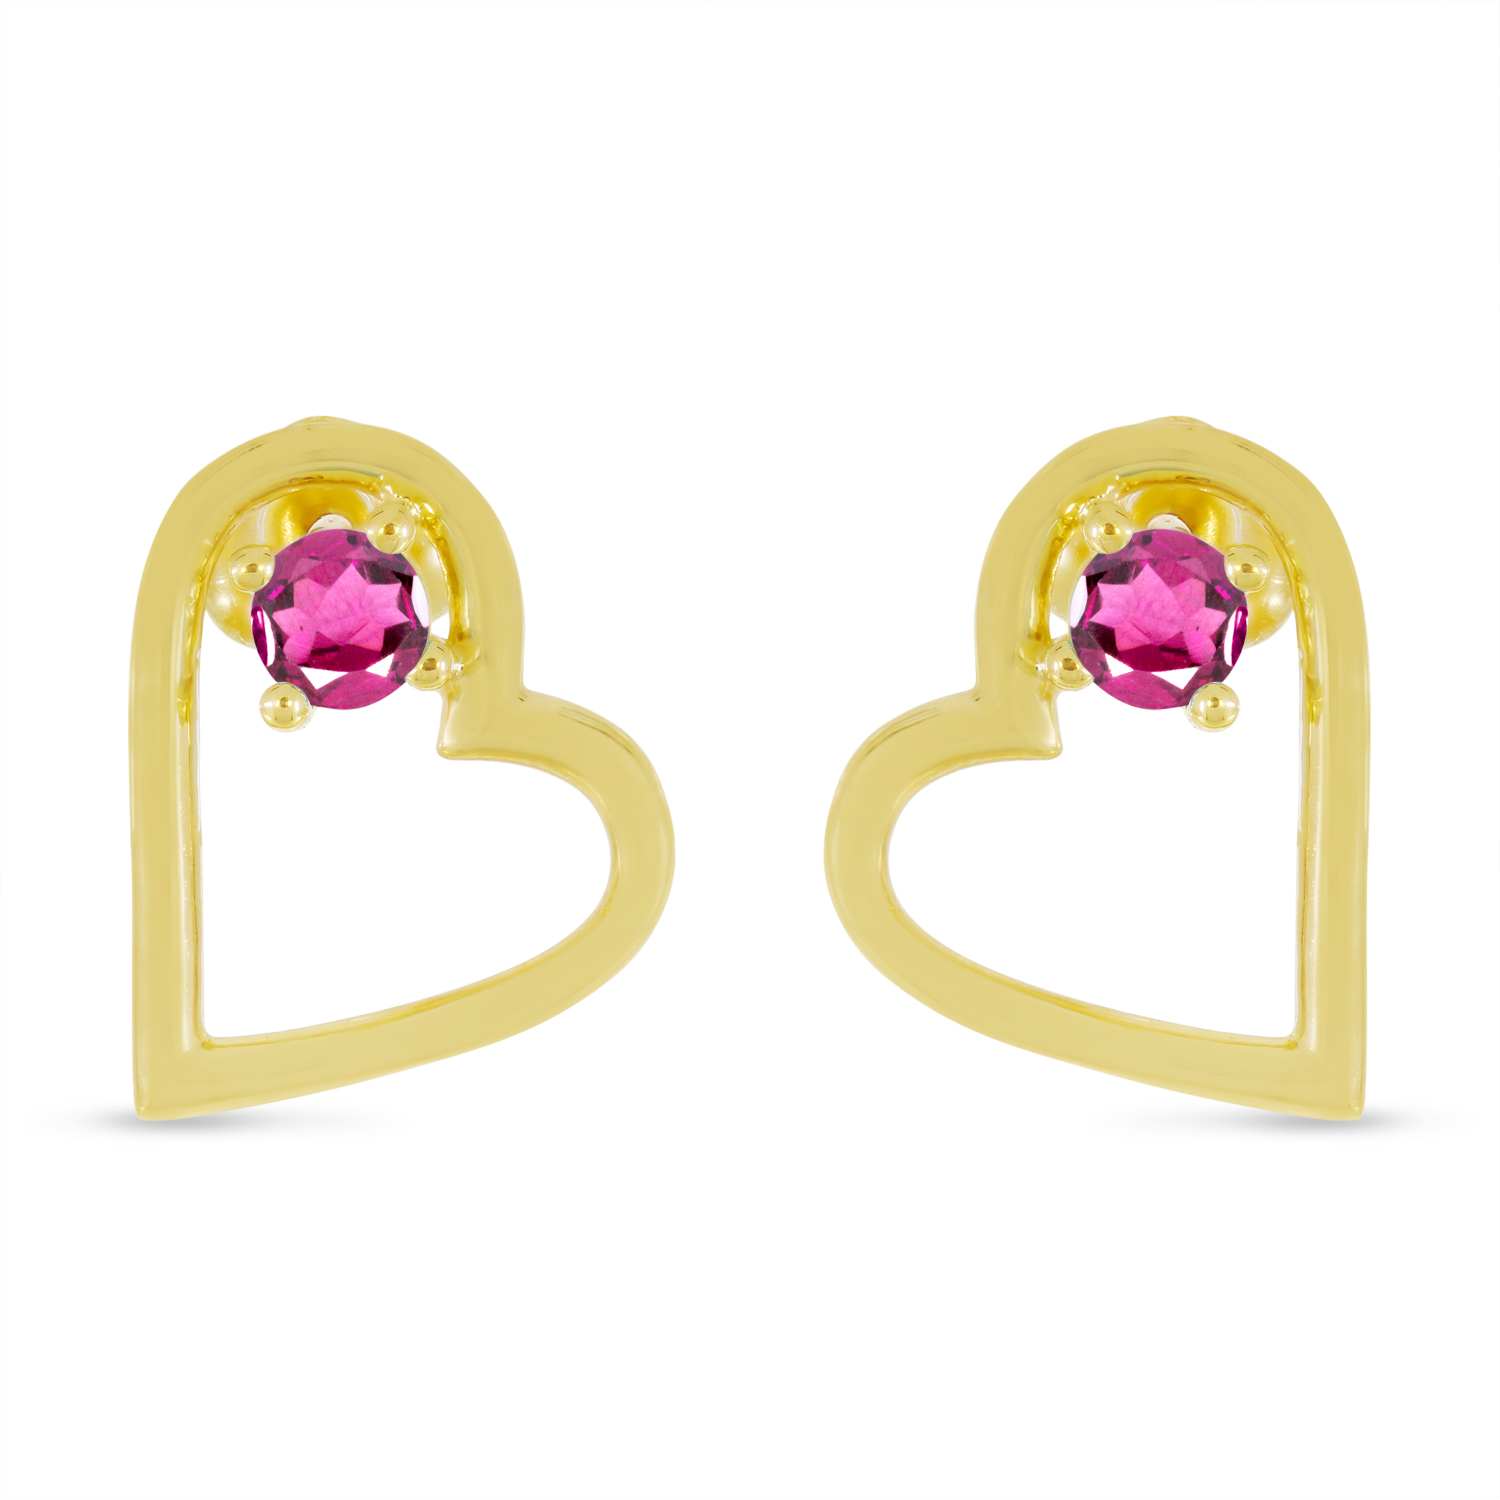 14K Yellow Gold Pink Tourmaline Open Heart Birthstone Earrings